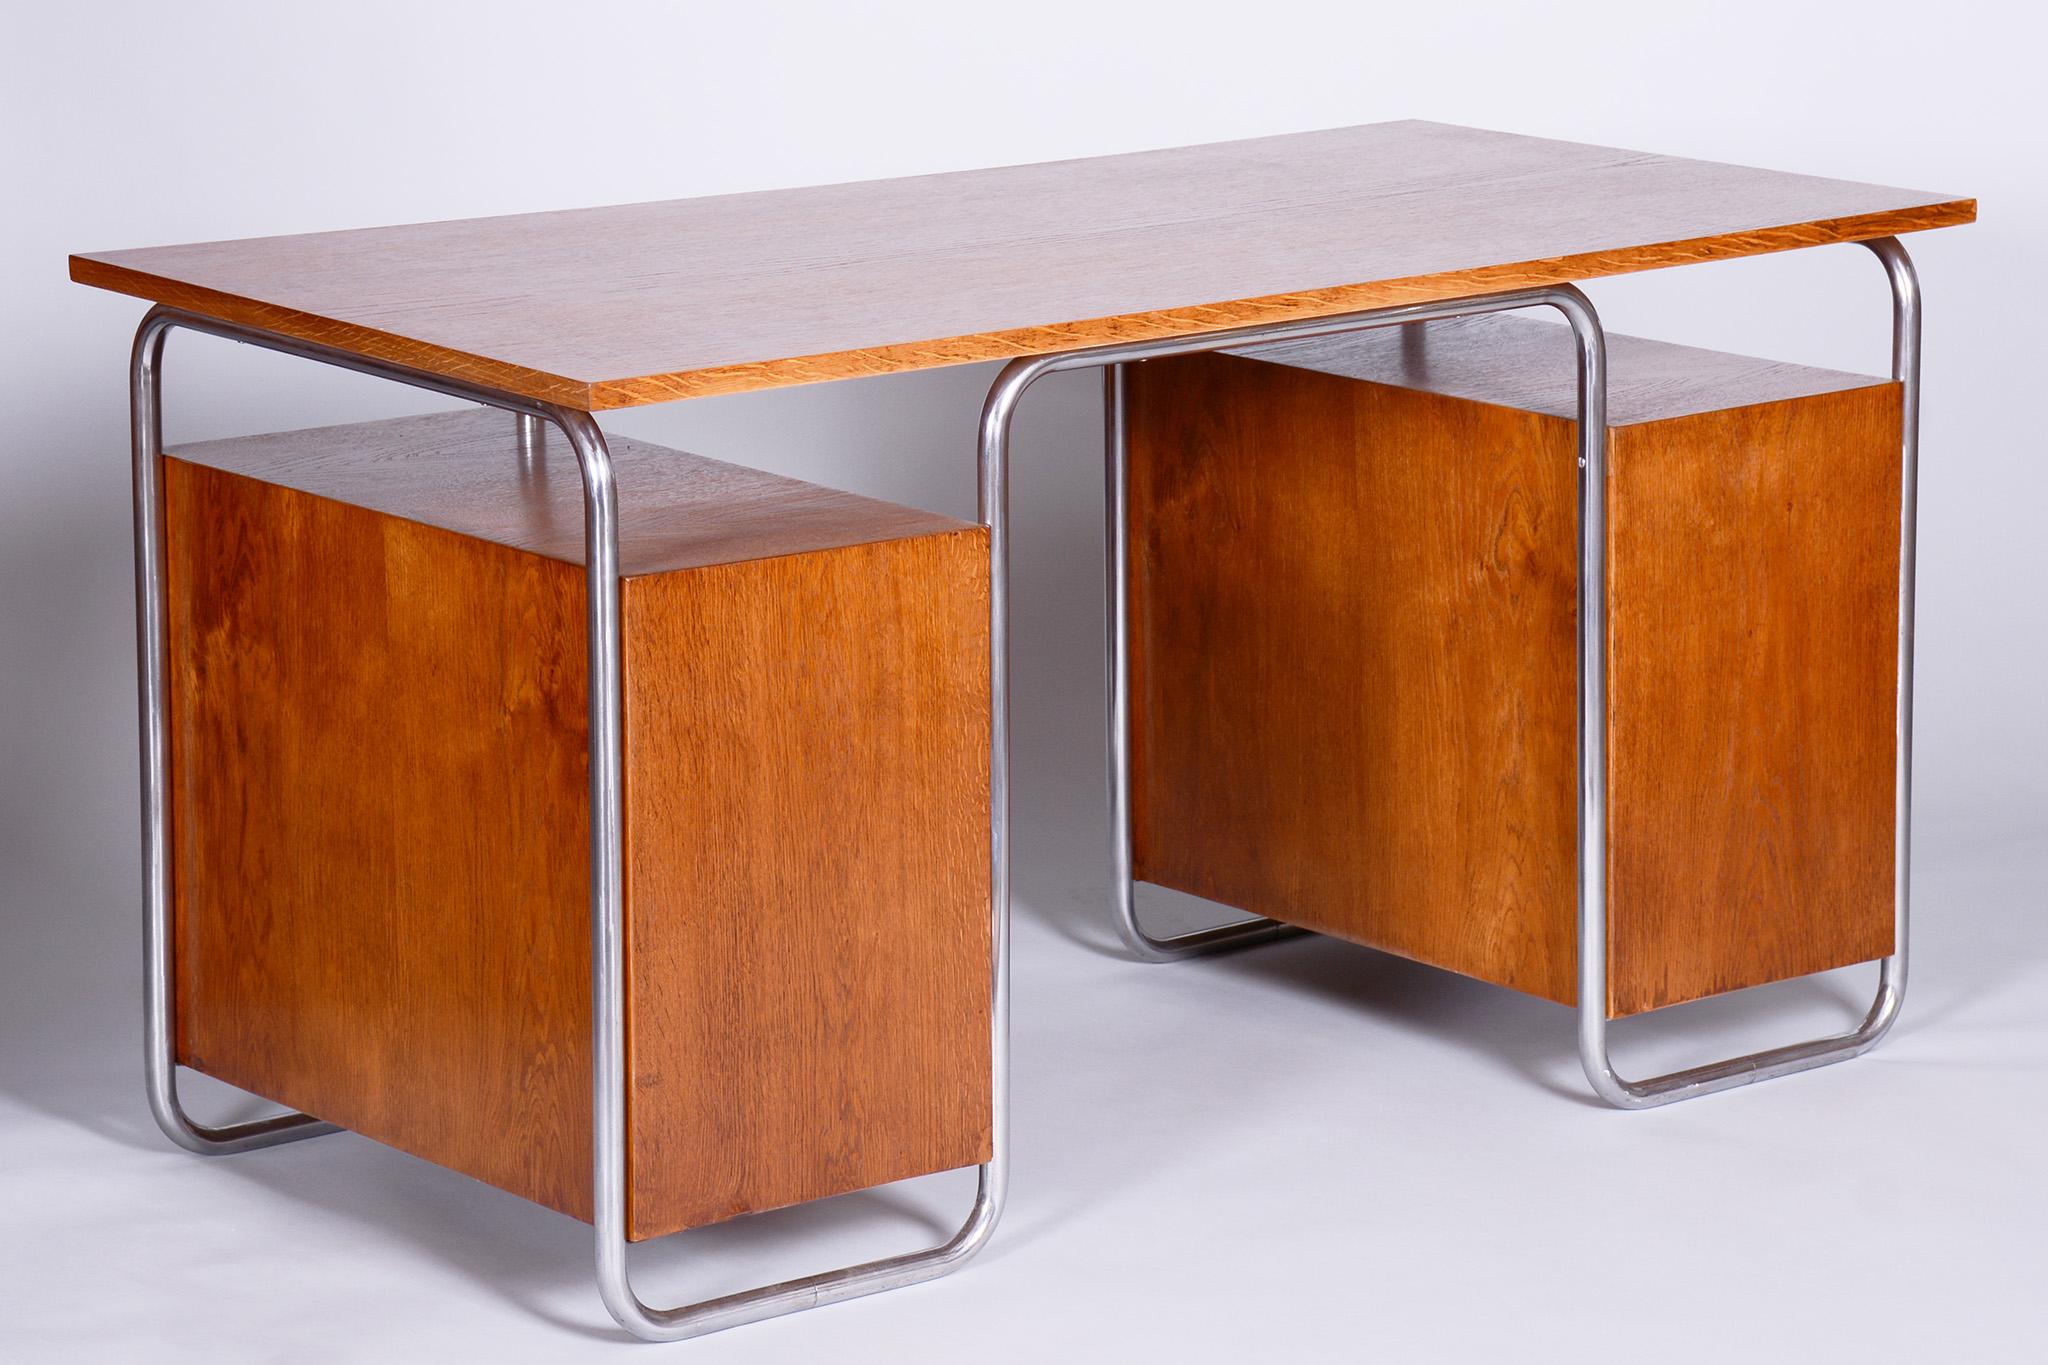 Bauhaus Restored Beech Writing Desk Made in 1930s by Robert Slezak, Czechia For Sale 1